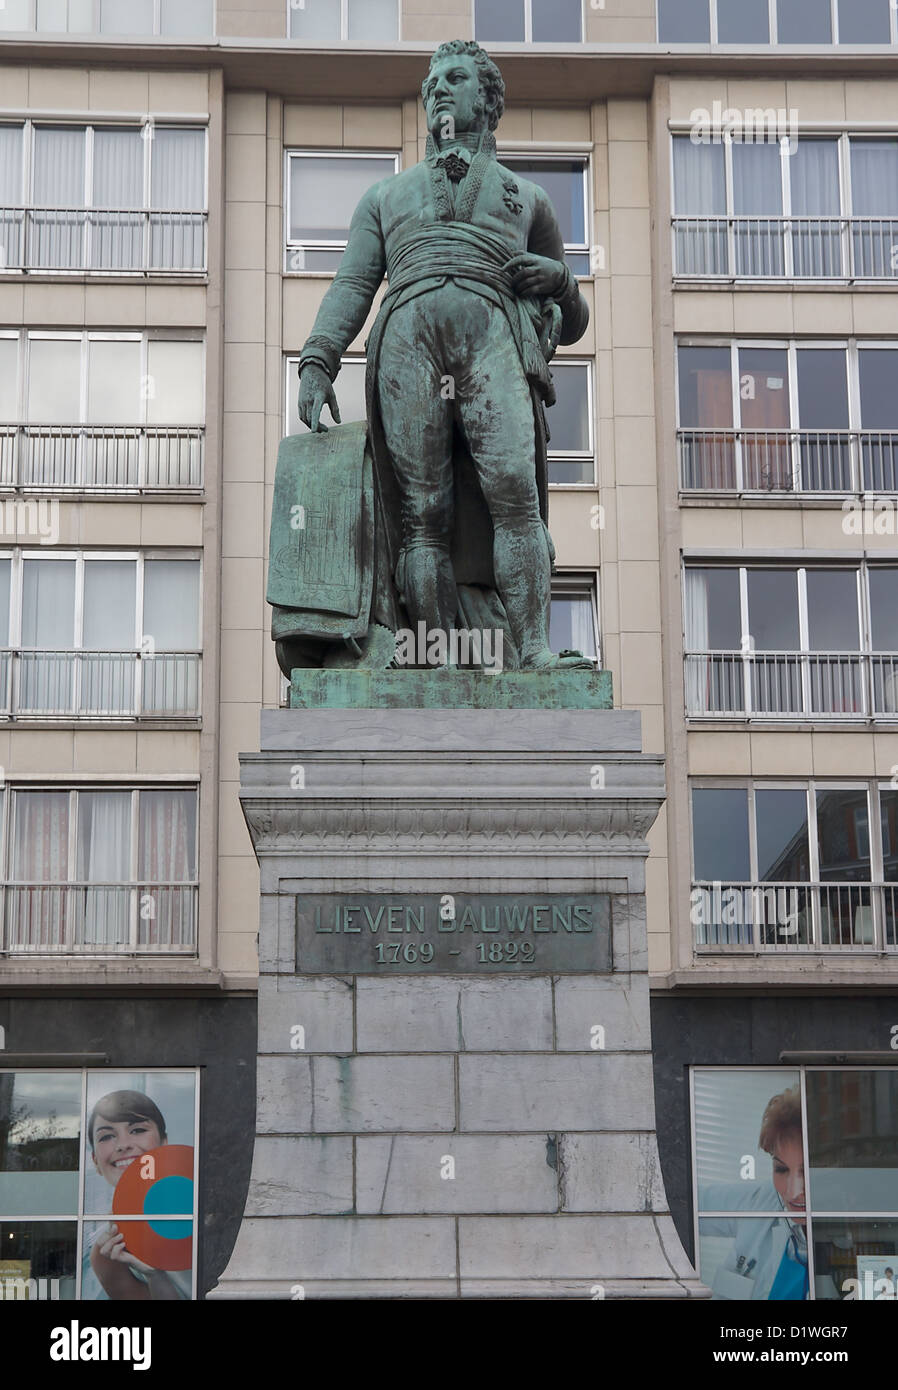 Bronze-Denkmal für Lieven Bauwens (ca. 1872), belgischer Unternehmer und industriellen Spion. Gent, Ostflandern, Belgien Stockfoto